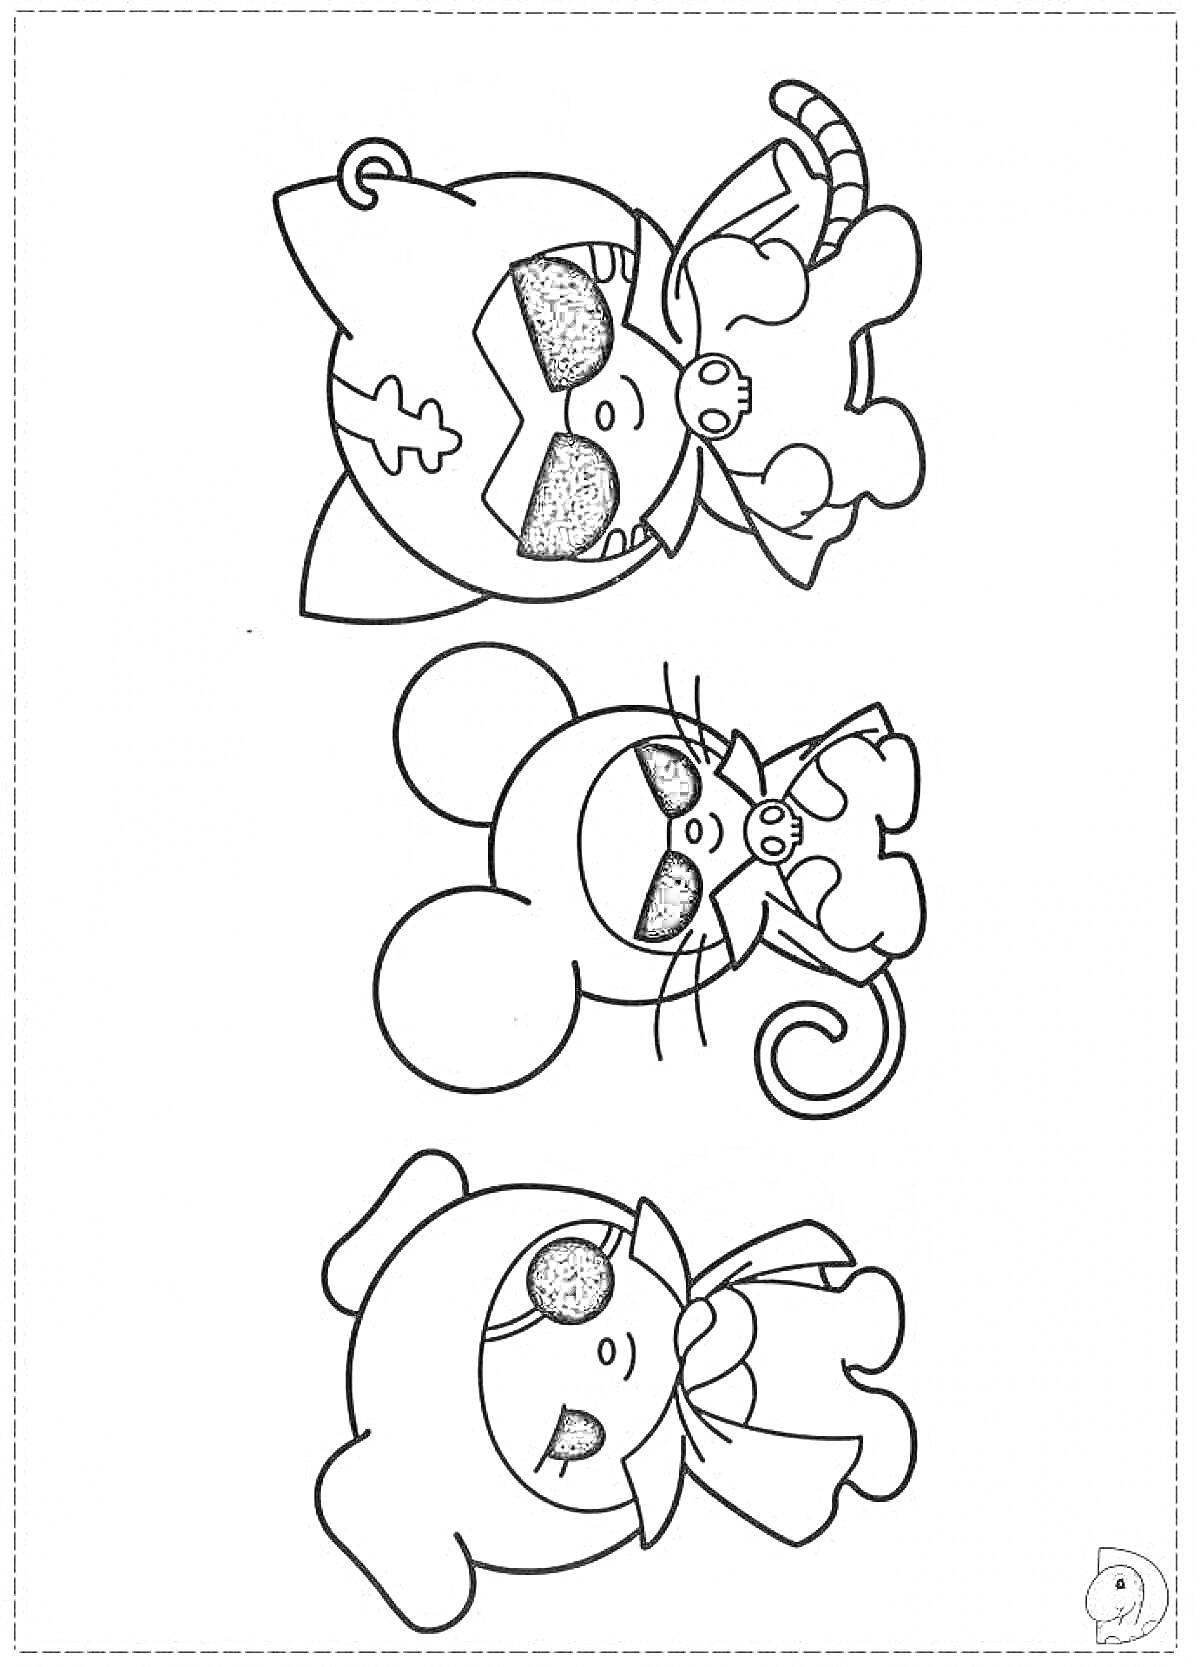 Раскраска Куроми, мышь и собака в черно-белом раскраске